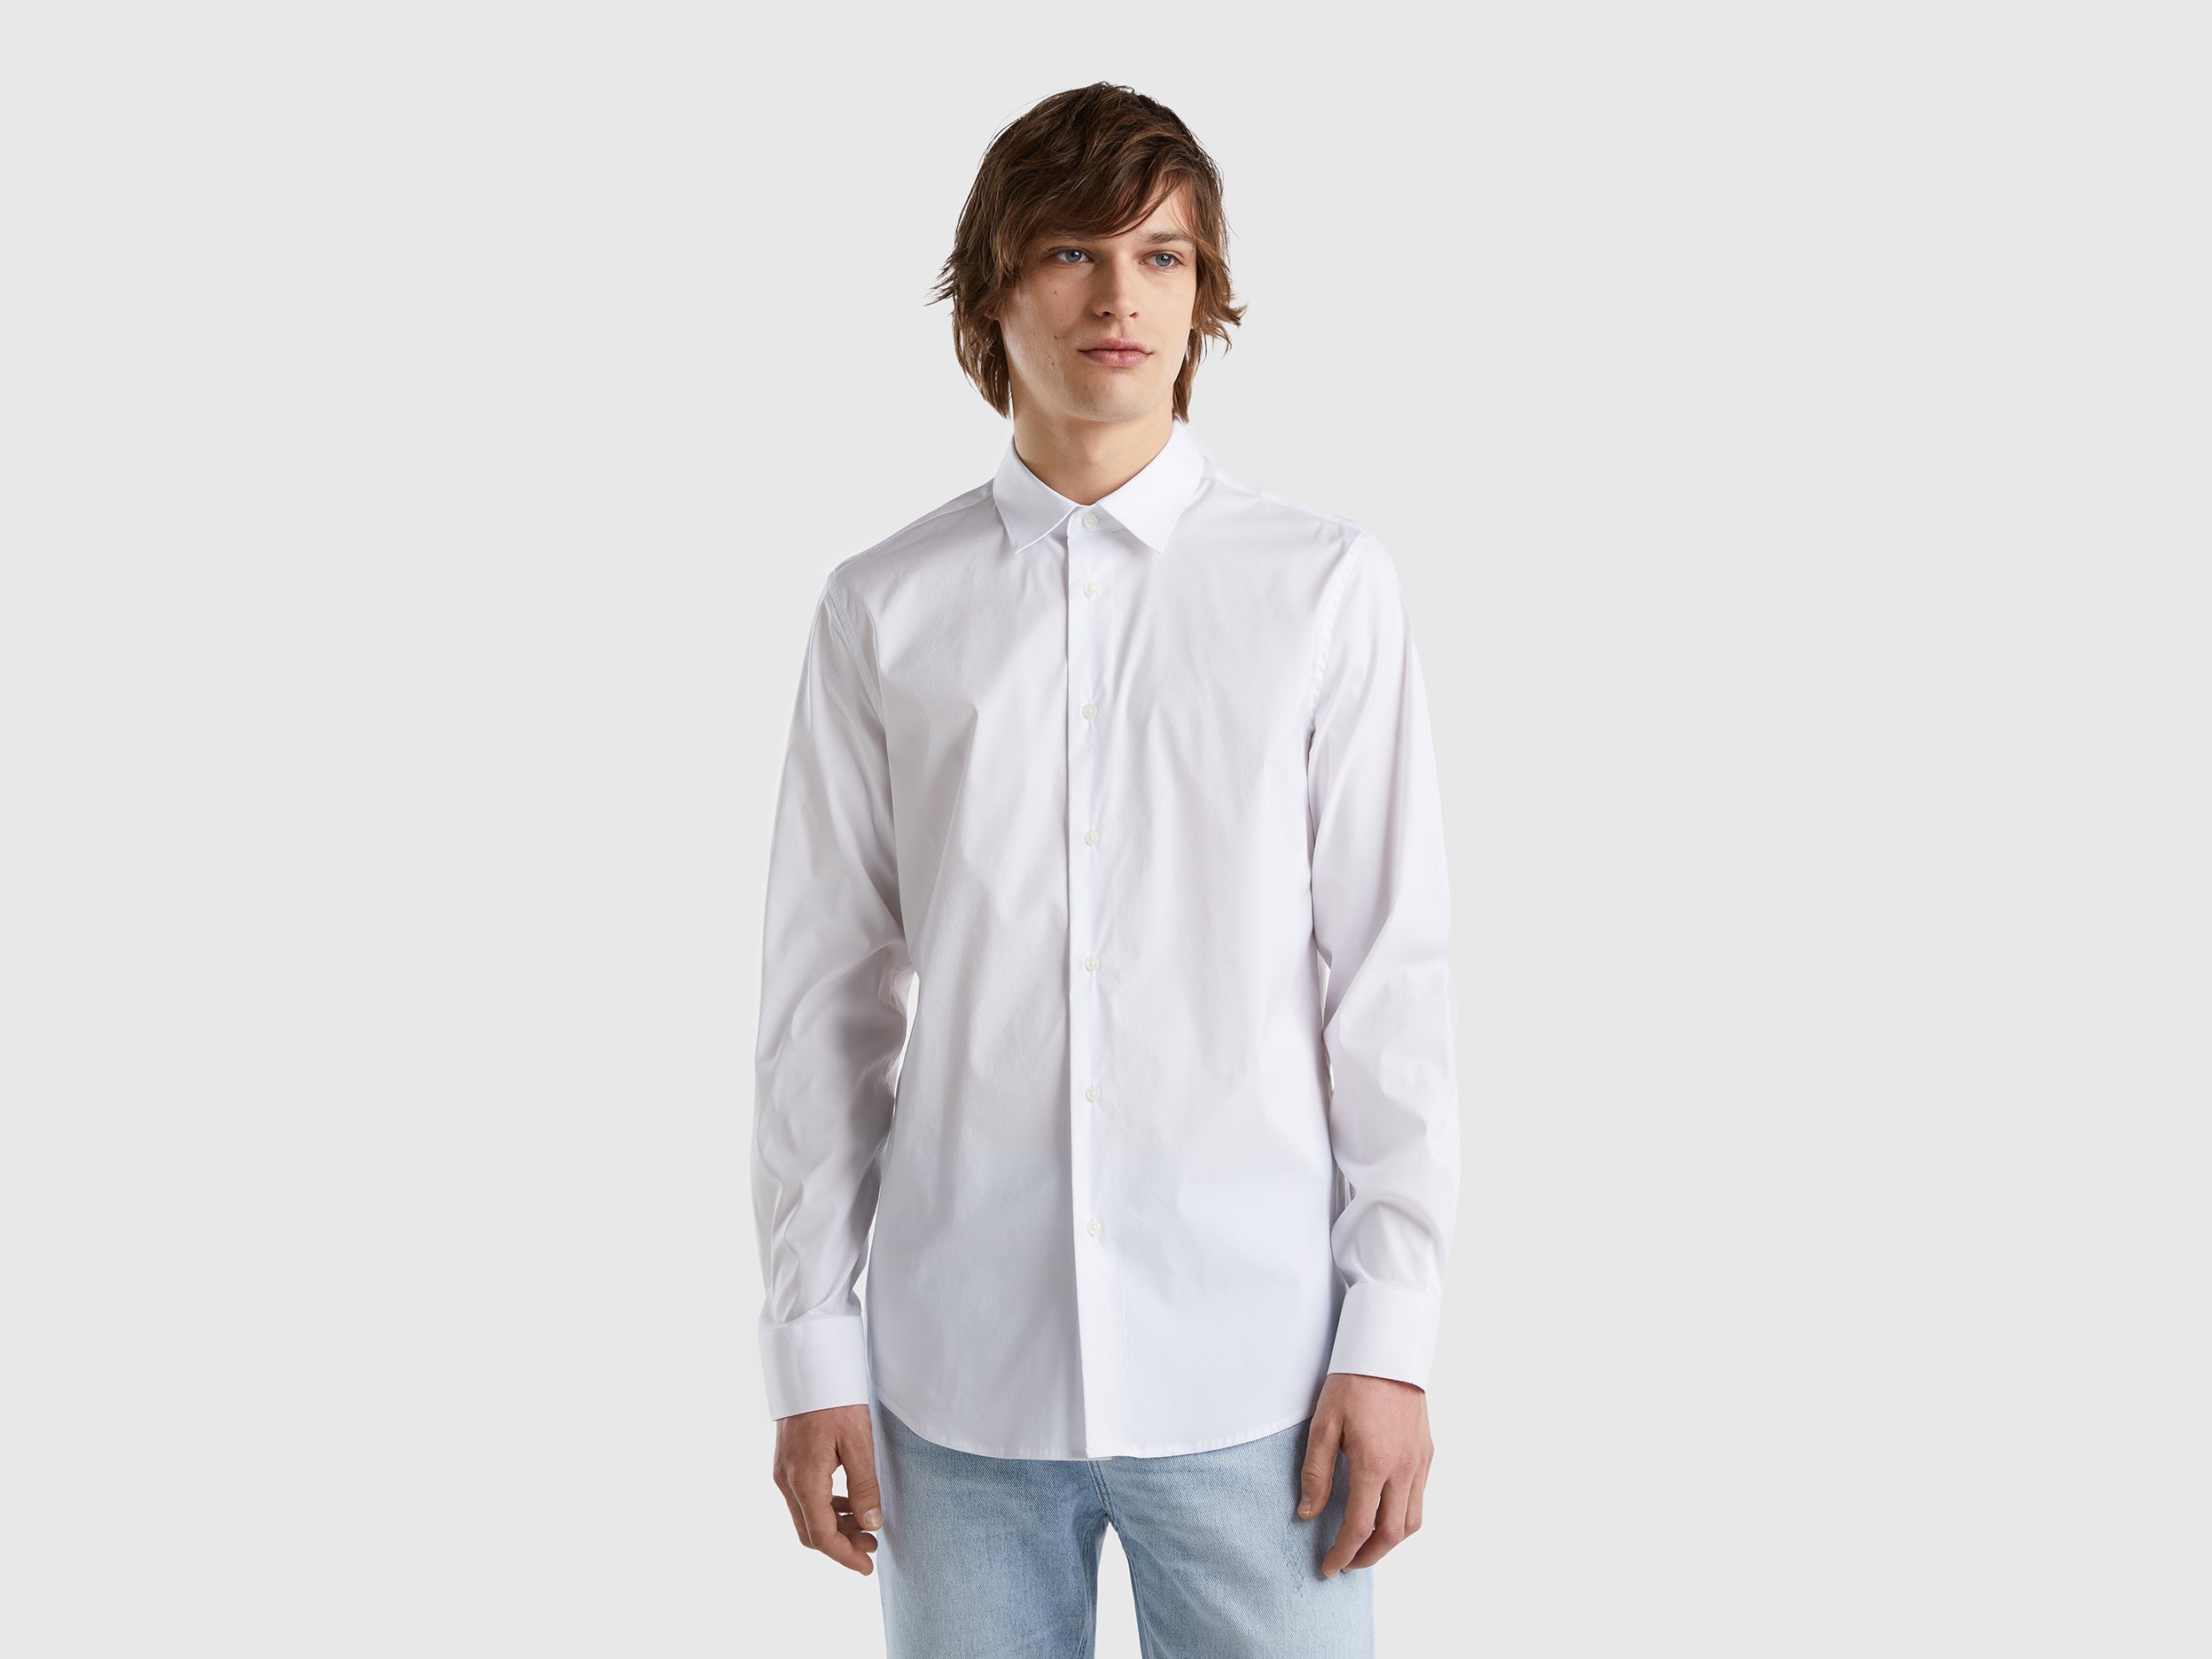 Benetton, Solid Color Slim Fit Shirt, size M, White, Men